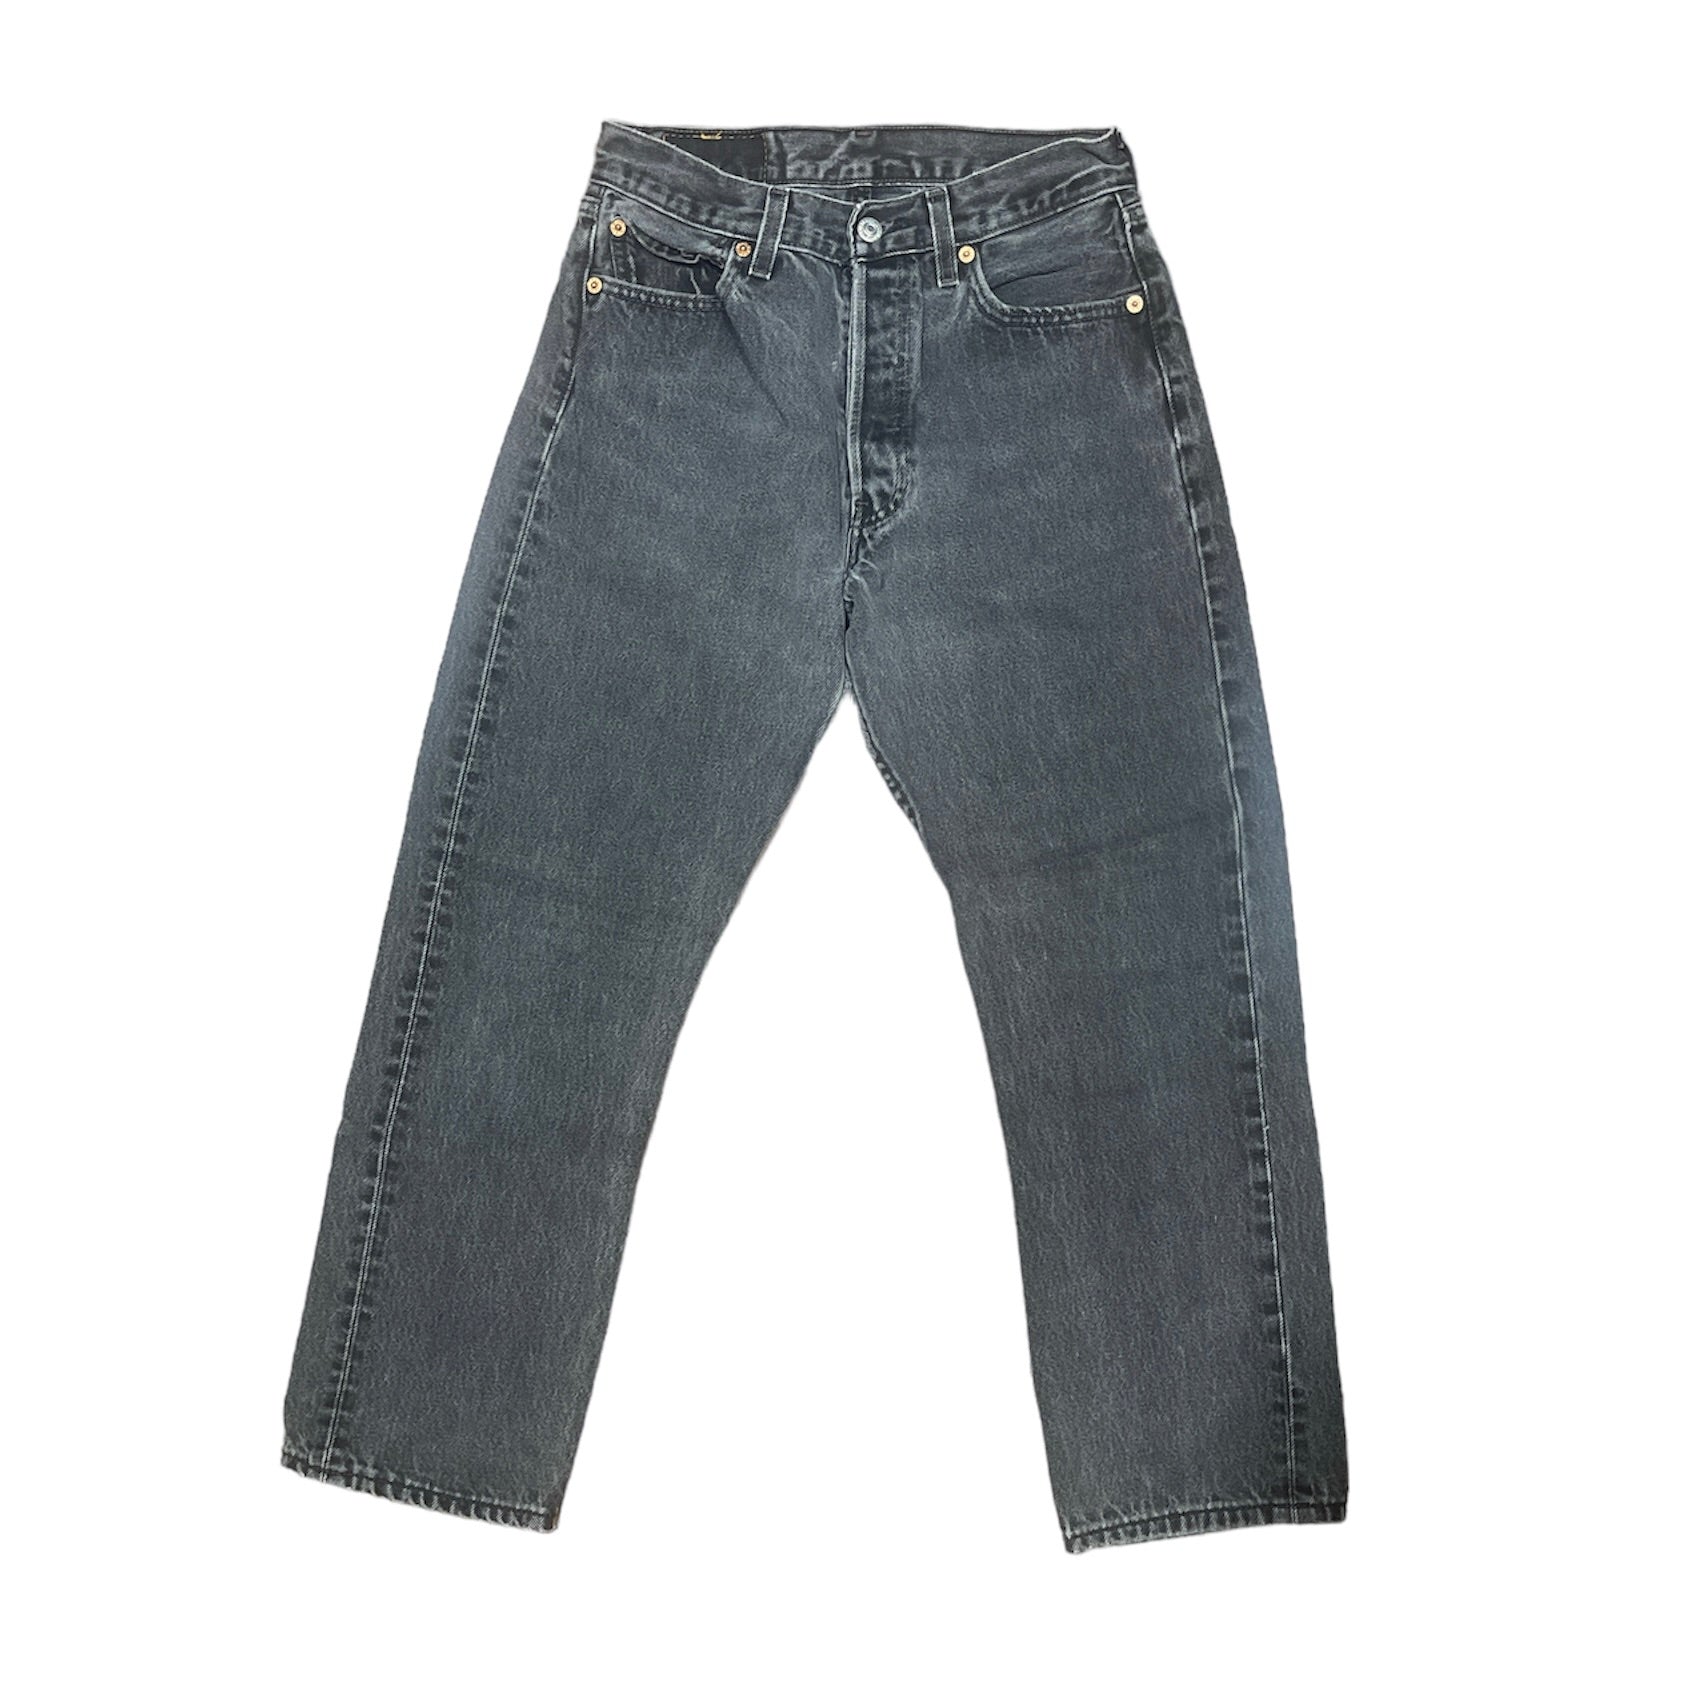 Vintage Levis 501 Grey Jeans (W29/L30)(W)